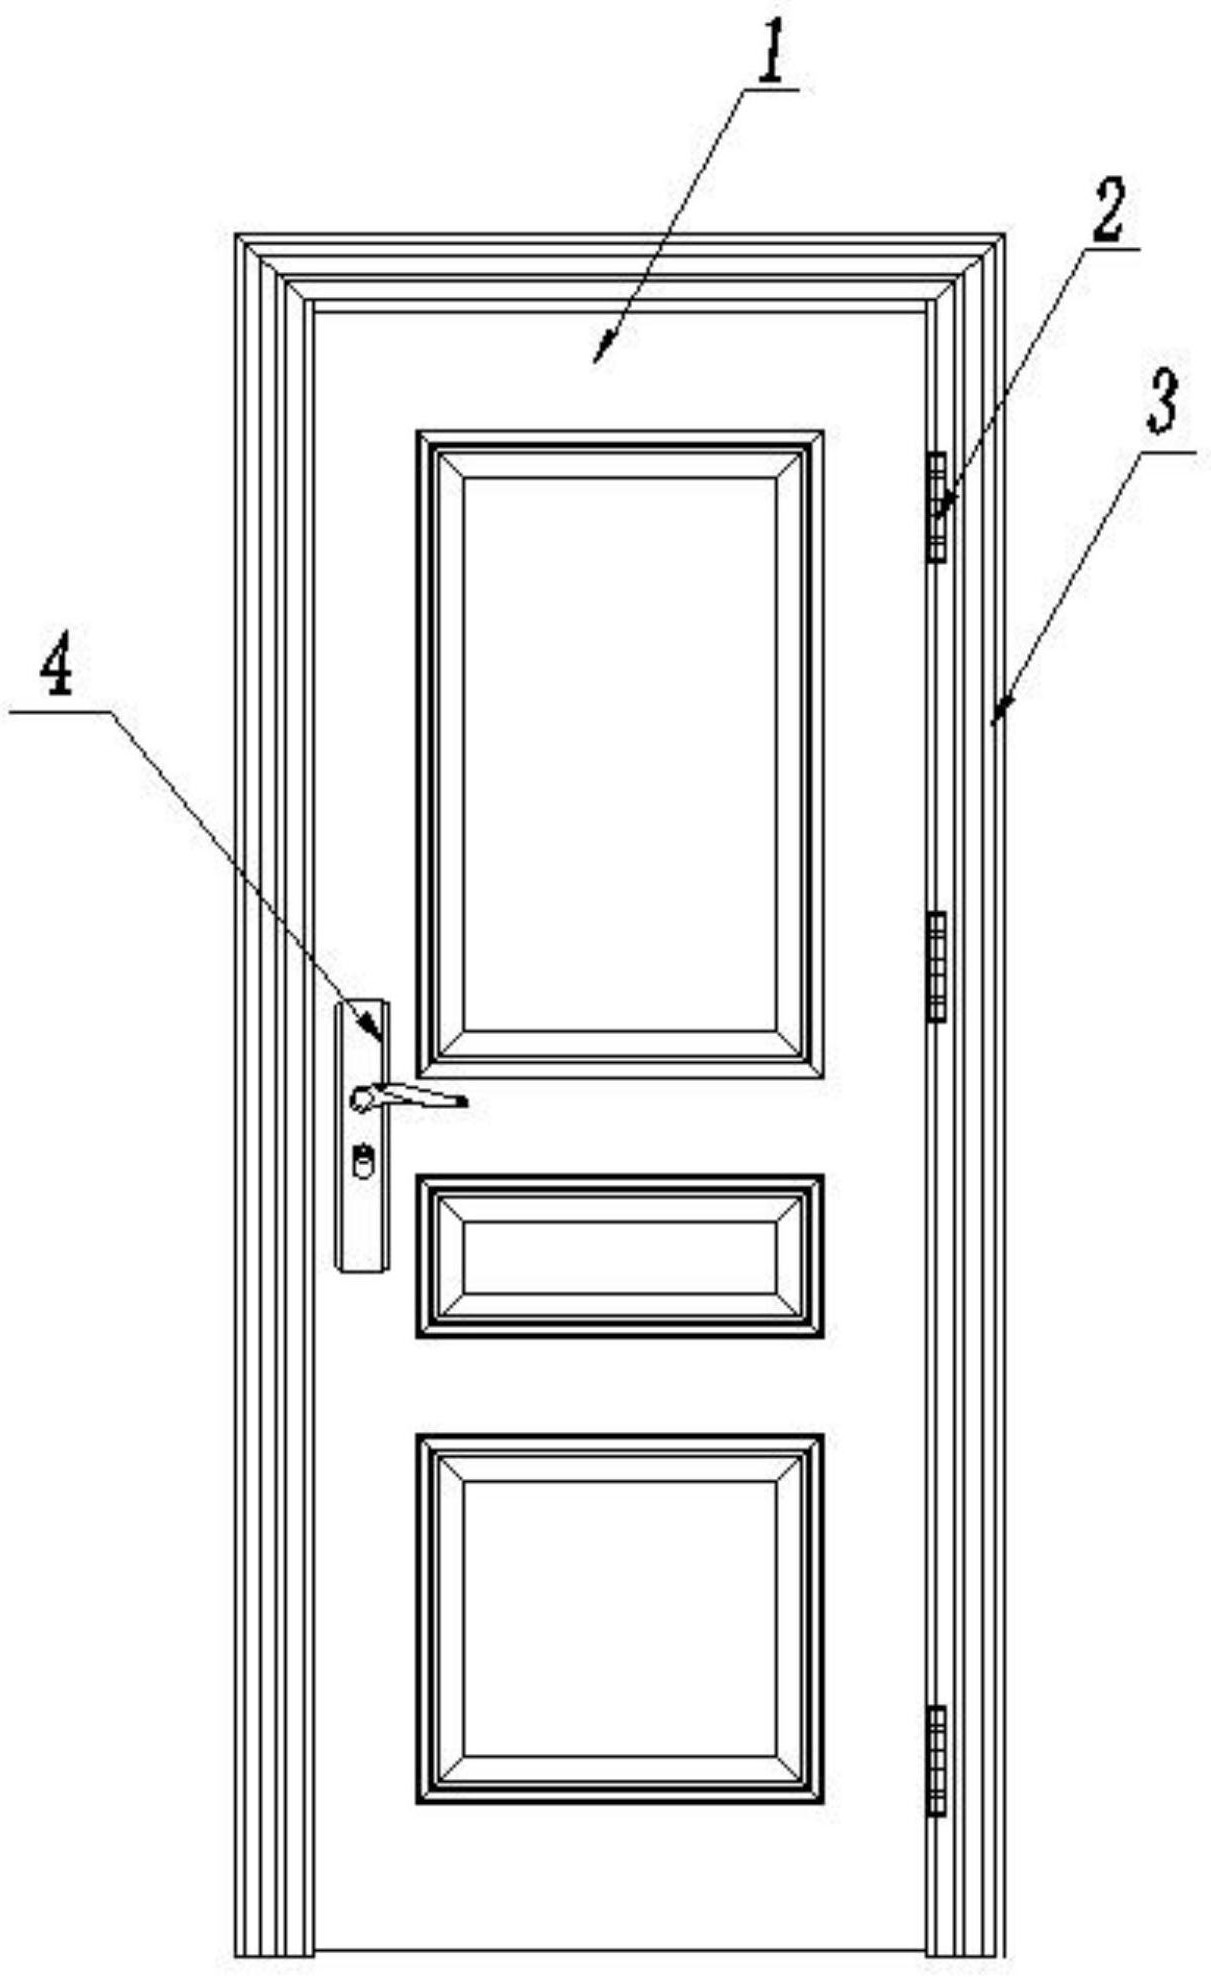 饰面板的一侧均设有垫板,两块垫板的内侧设有蜂窝骨架,门扇与门框线条